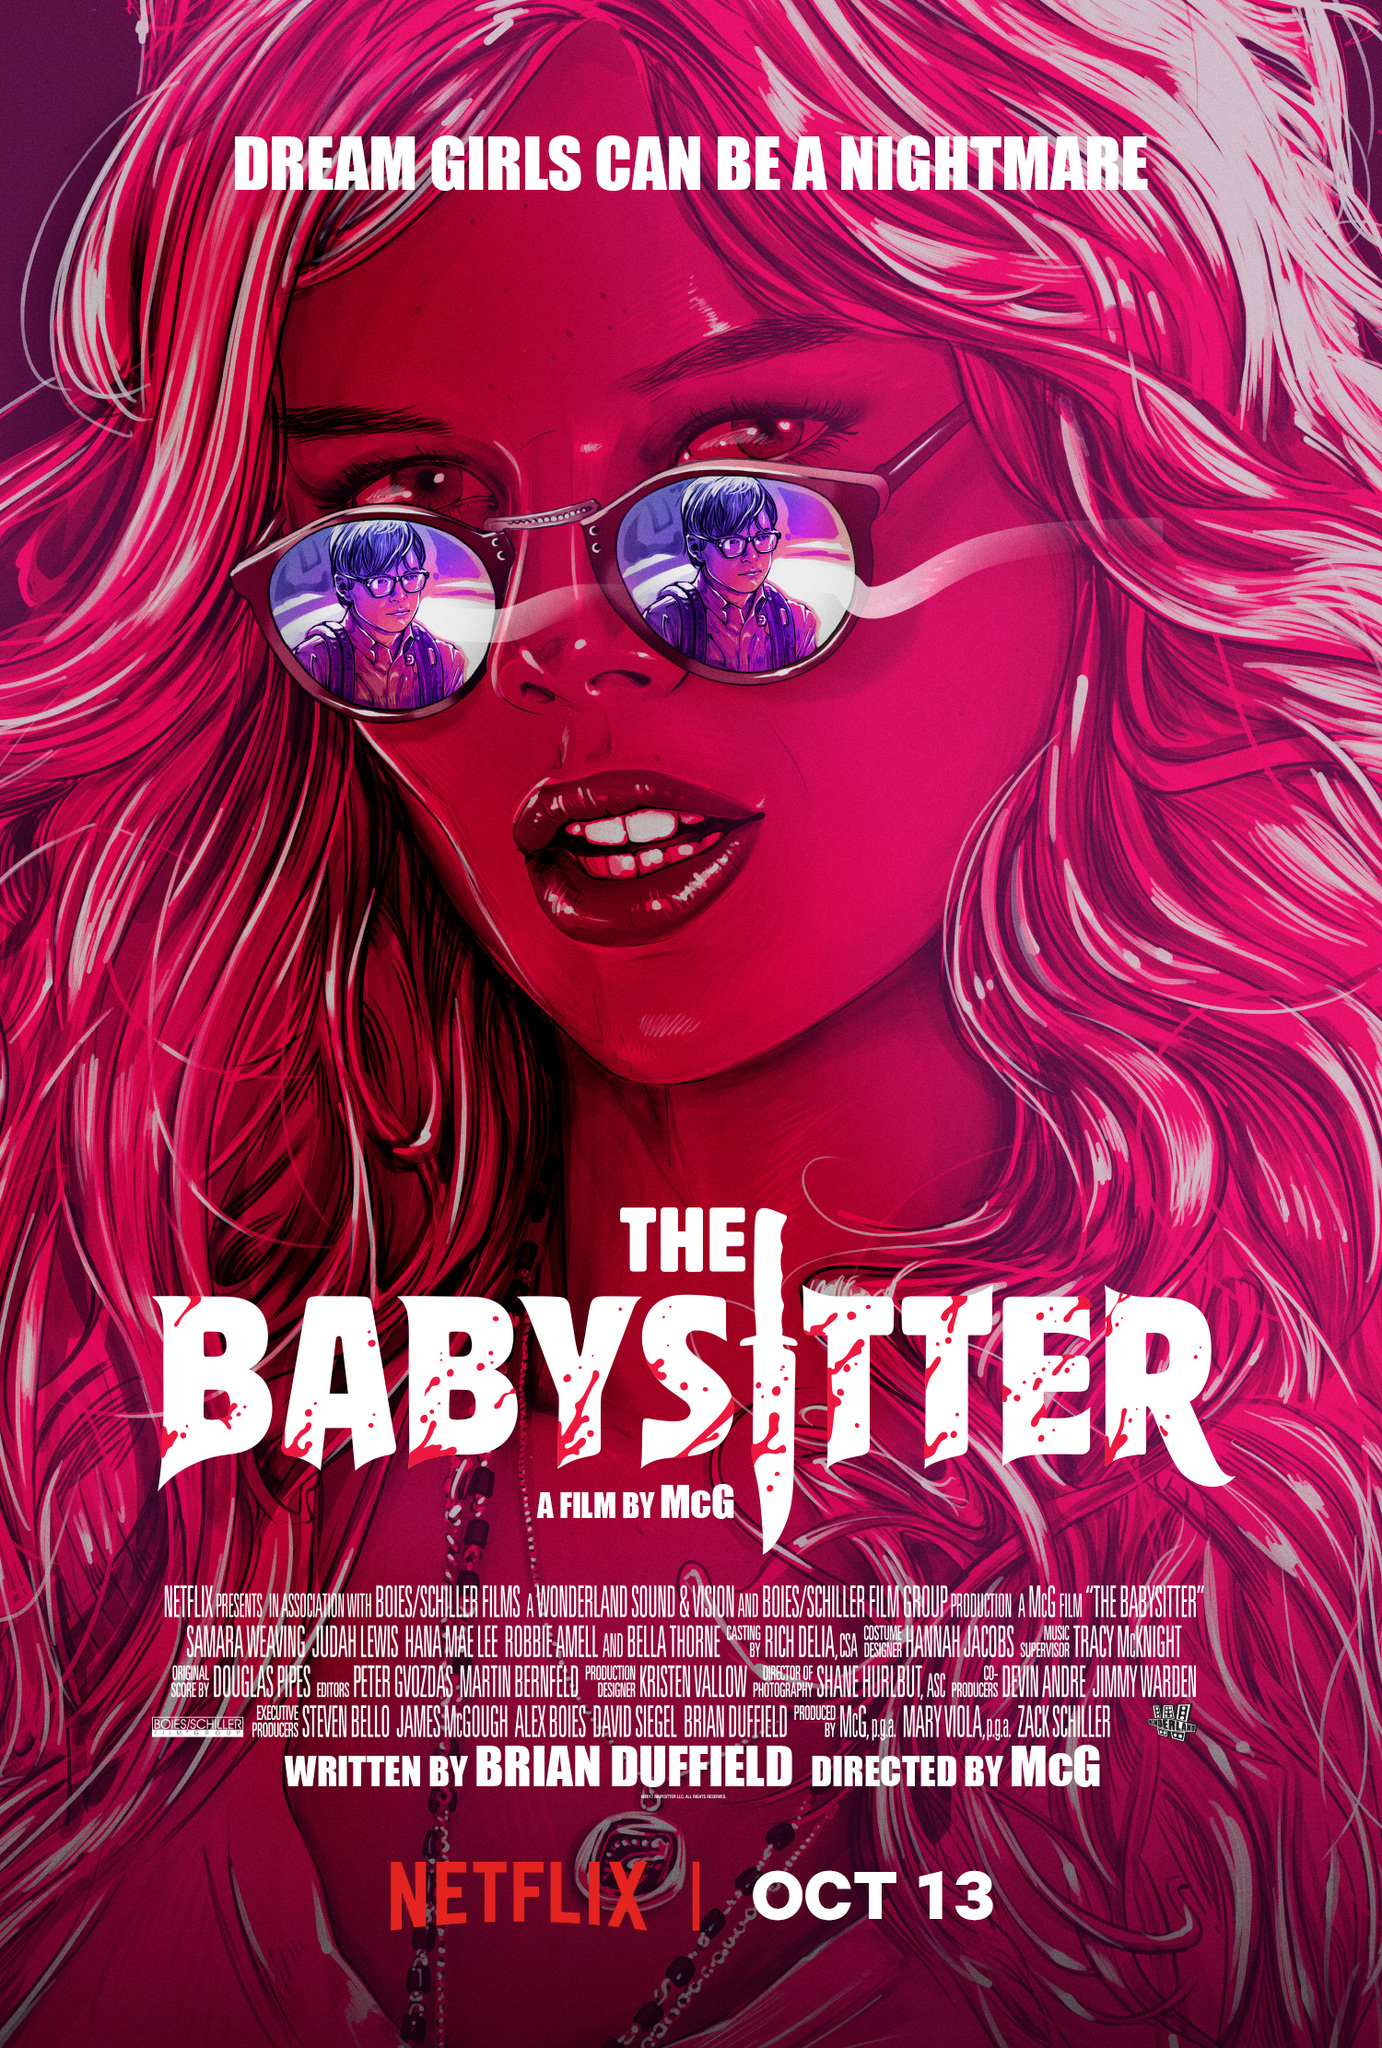 ดูหนังออนไลน์ฟรี The Babysitter (2017) เดอะ เบบี้ซิตเตอร์